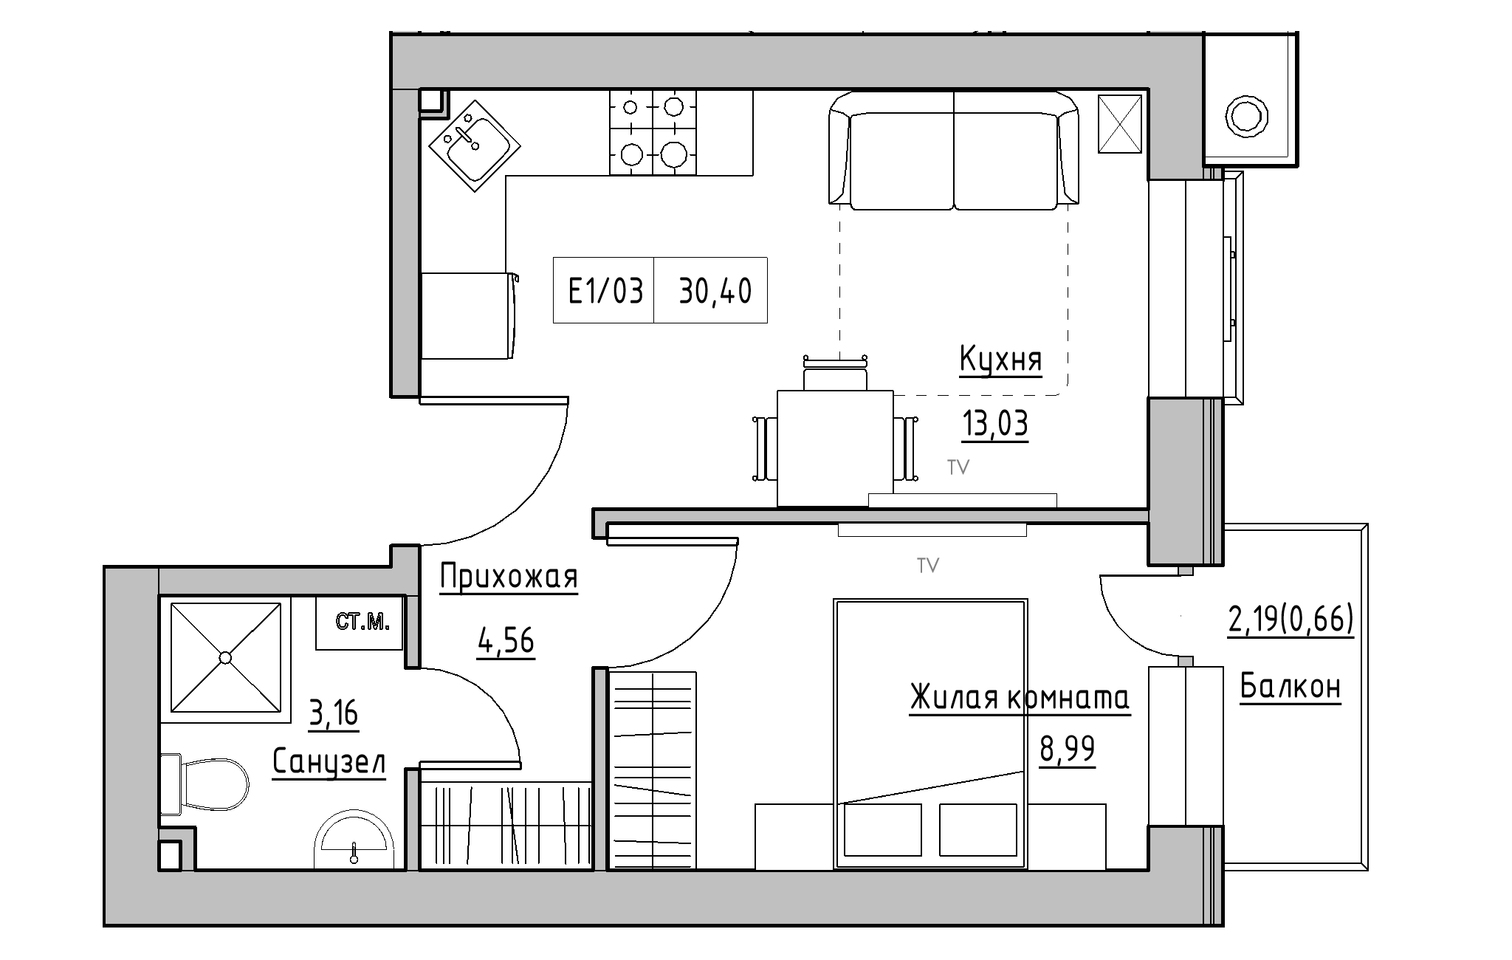 Планування 1-к квартира площею 30.4м2, KS-013-03/0002.